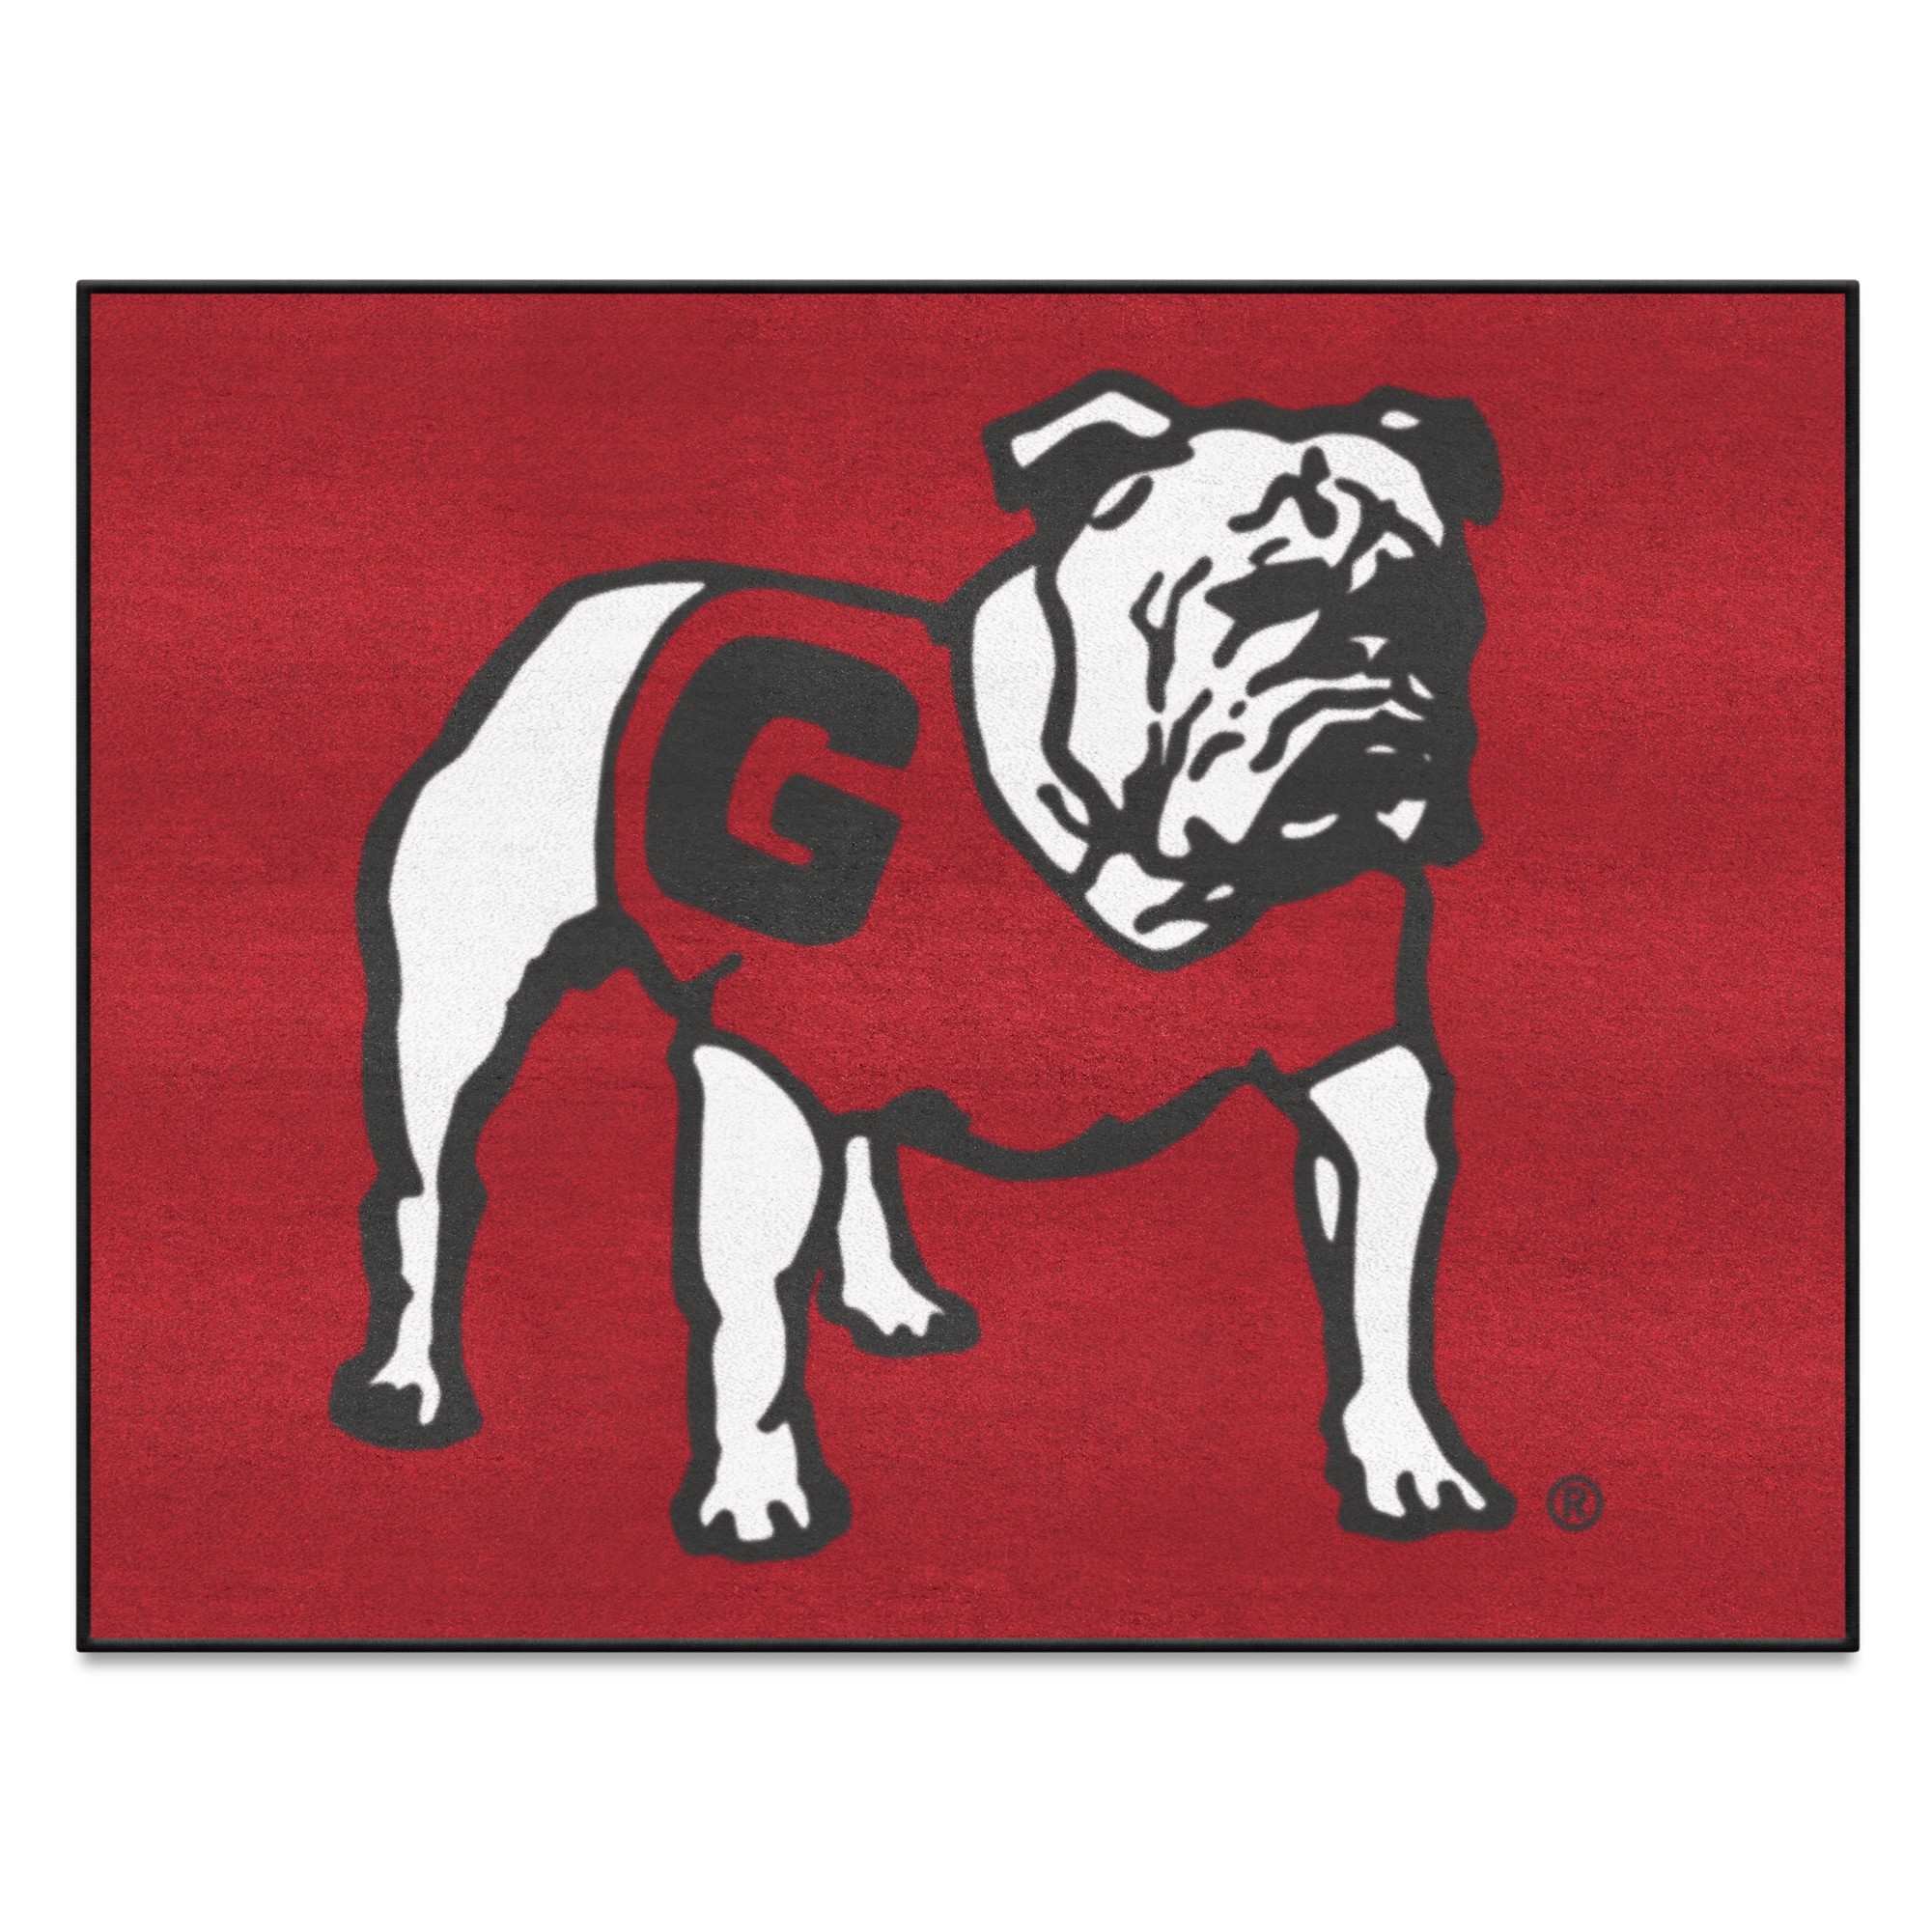 All Star Dogs: Ottawa Senators Pet Products